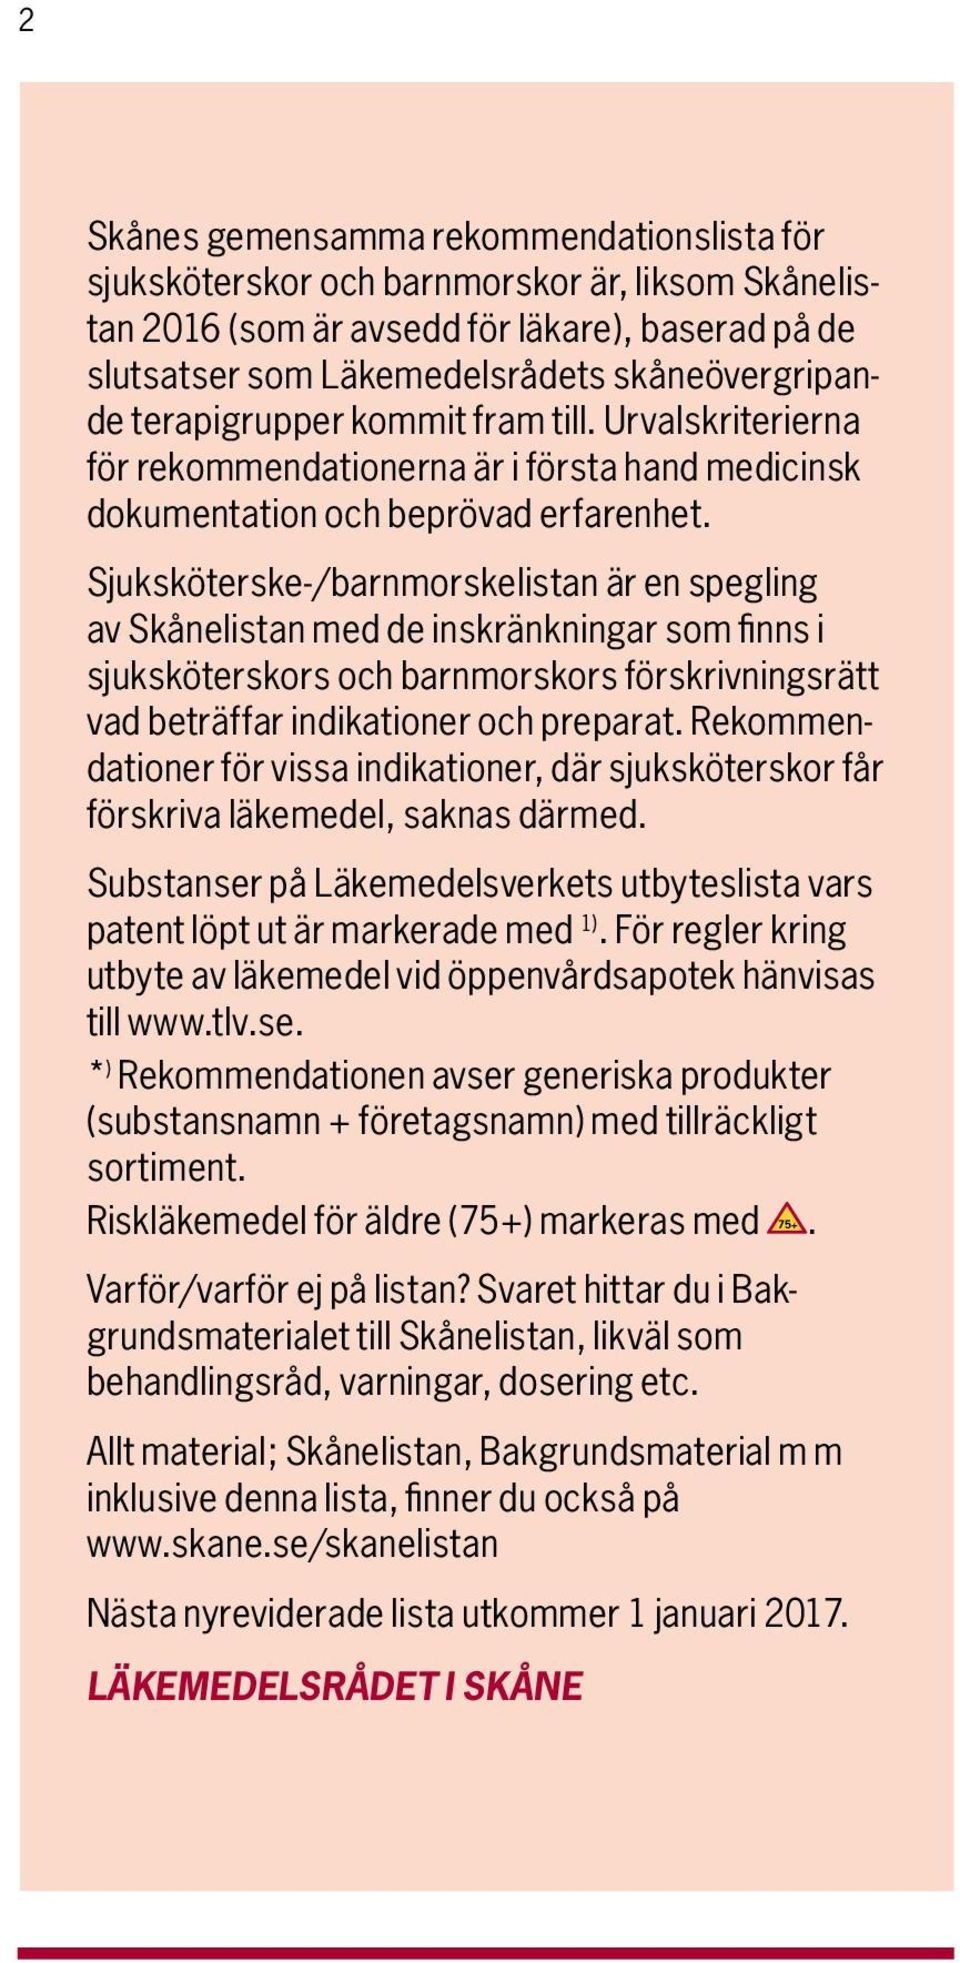 Sjuksköterske-/barnmorske listan är en spegling av Skåne listan med de inskränkningar som finns i sjuksköter skors och barnmorskors förskrivningsrätt vad beträffar indikationer och preparat.